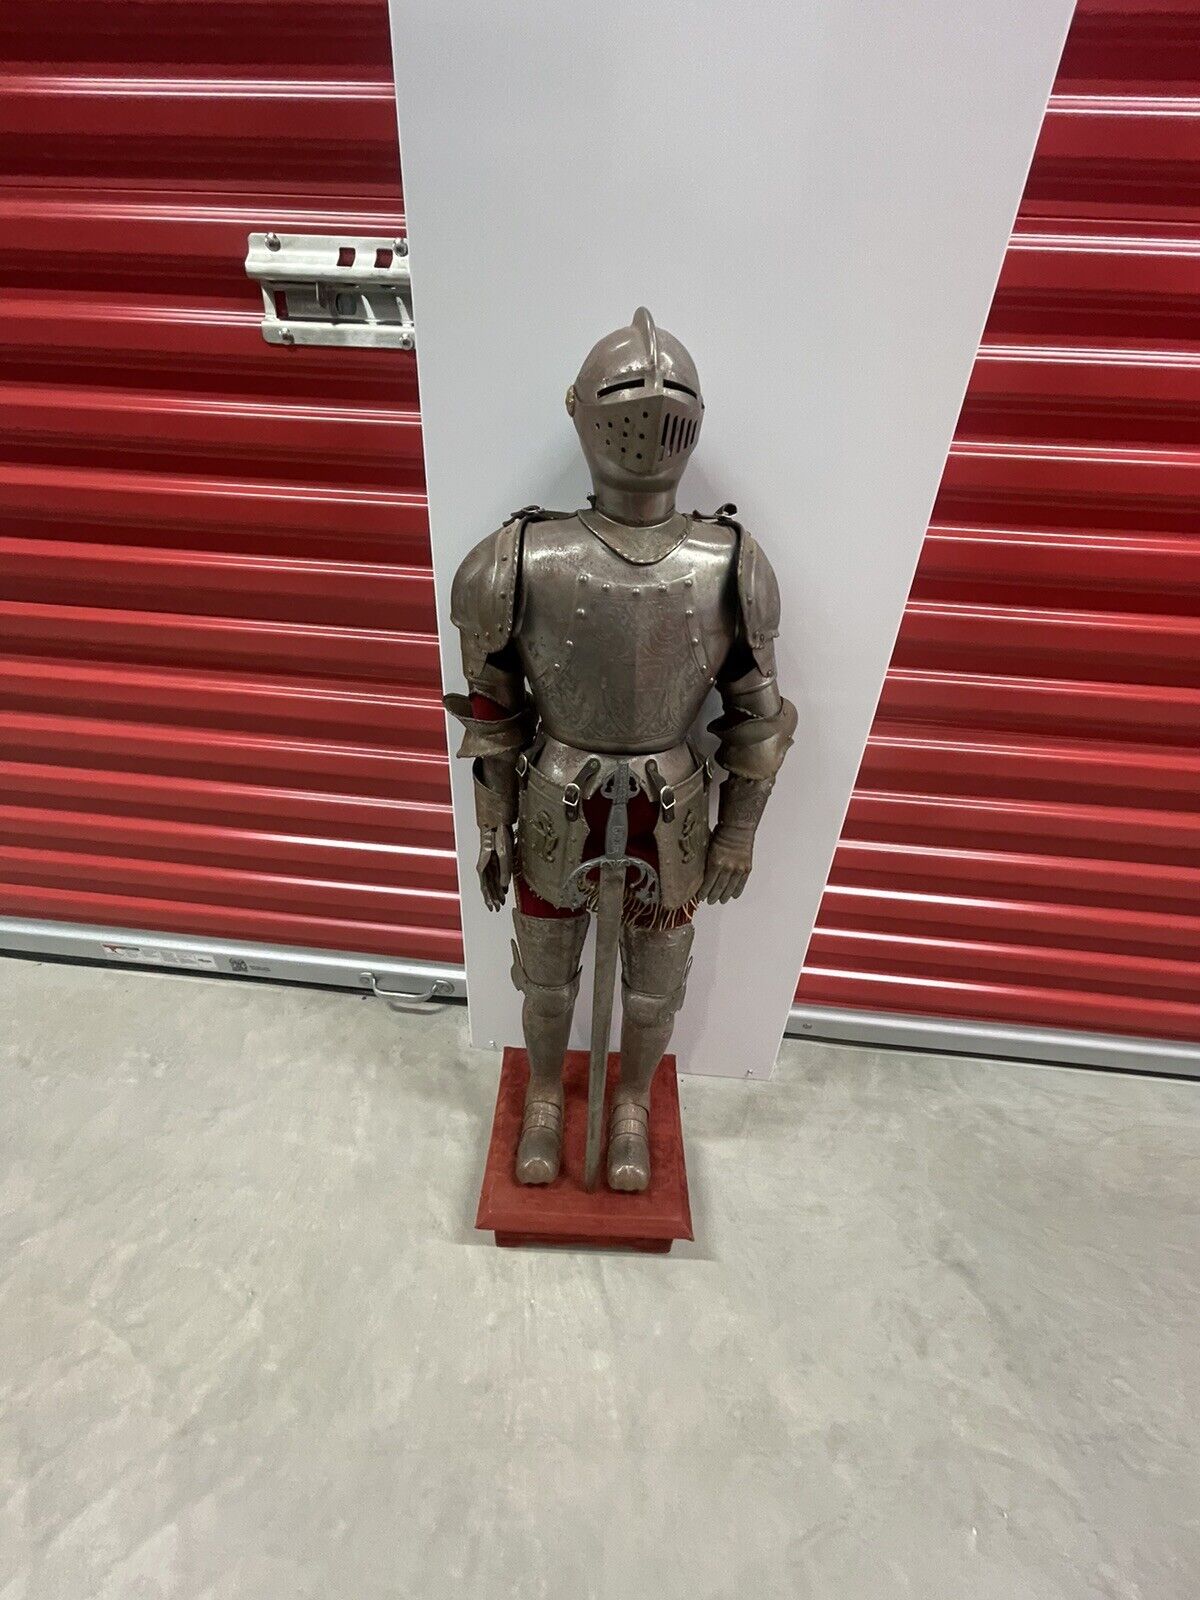 Miniature Suit Armor English German French Renaissance Medieval Armour antique